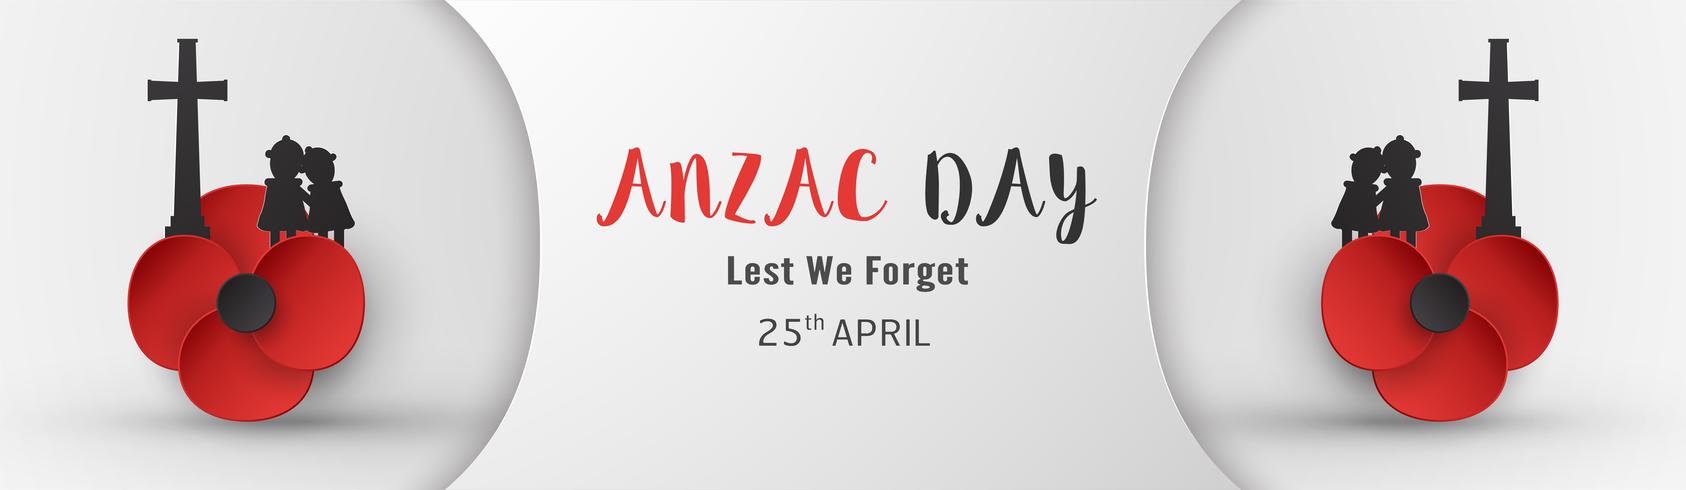 Feliz Dia Anzac em 25 de abril por quem serviu e morreu na guerra da Austrália e Nova Zelândia. Modelo de design de elementos para banner, cartaz, saudação, convite. Ilustração vetorial no corte de papel, estilo ofício. vetor